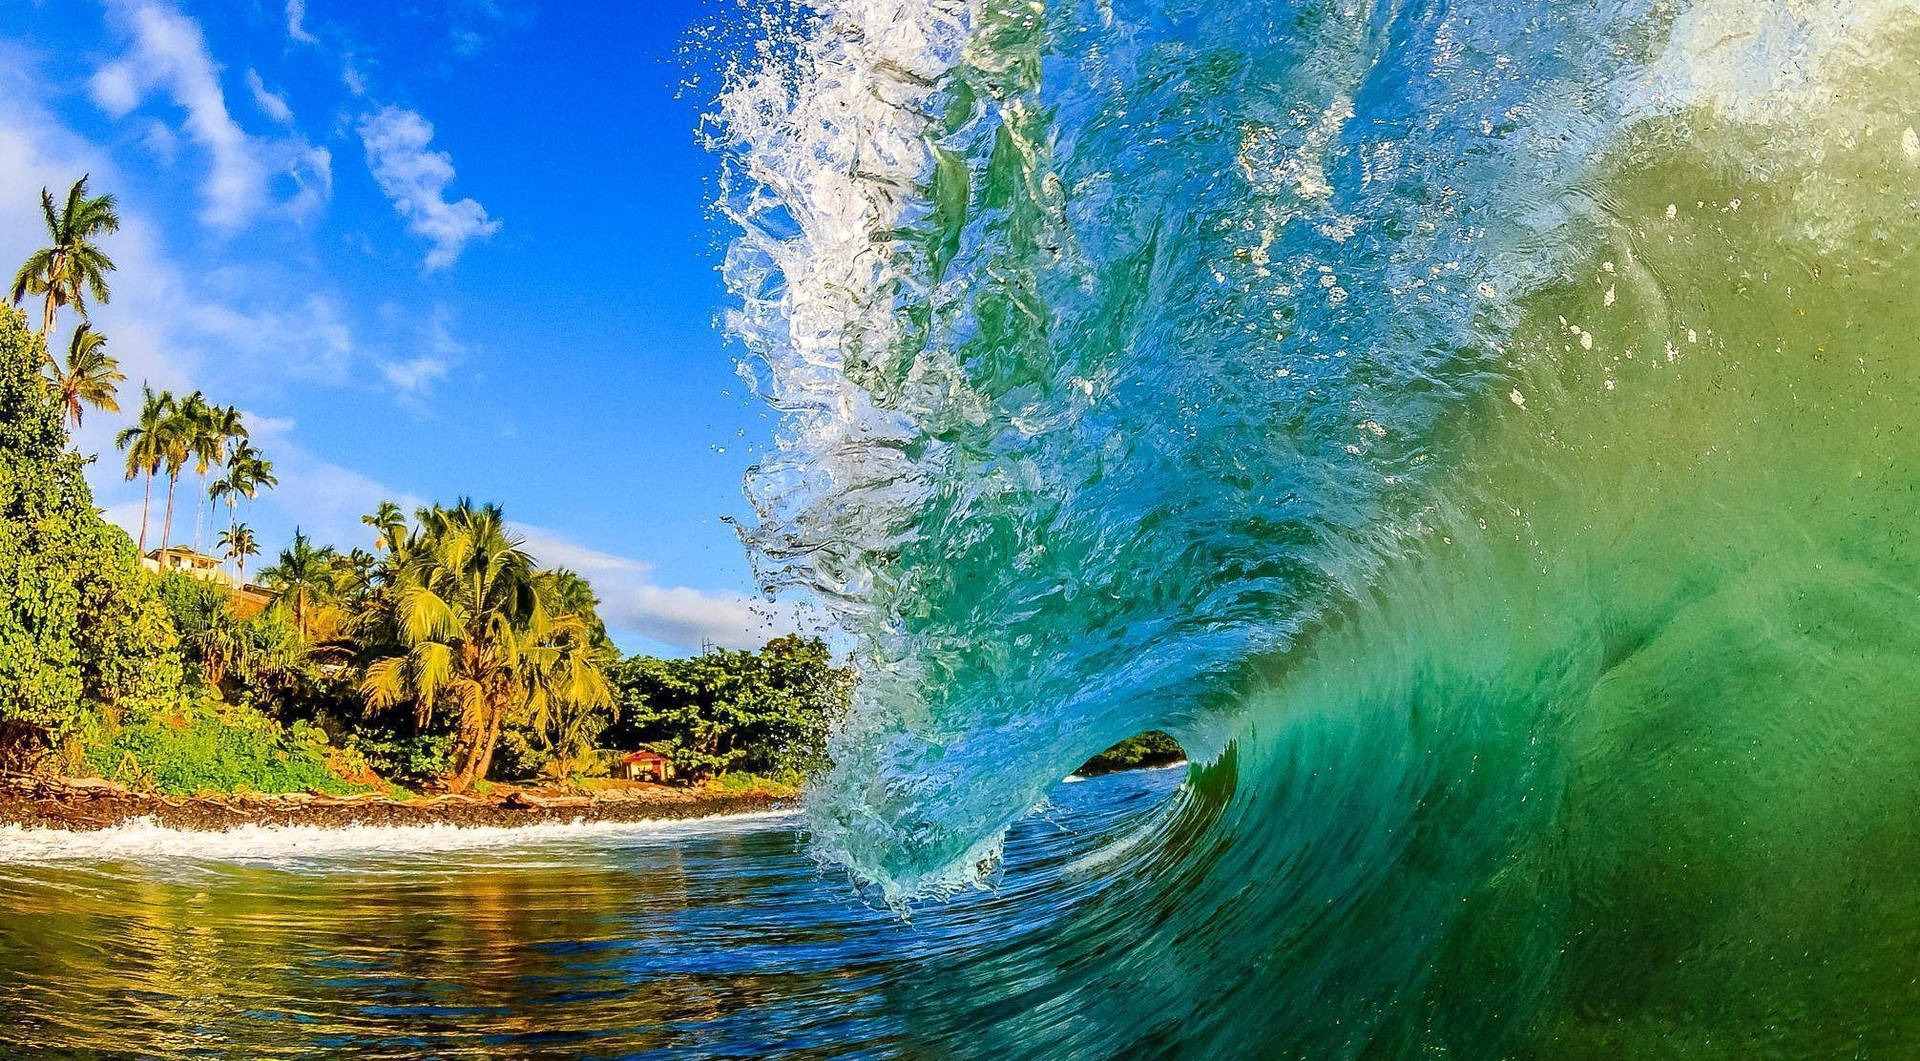 Gopro Shot Inside A Wave Background